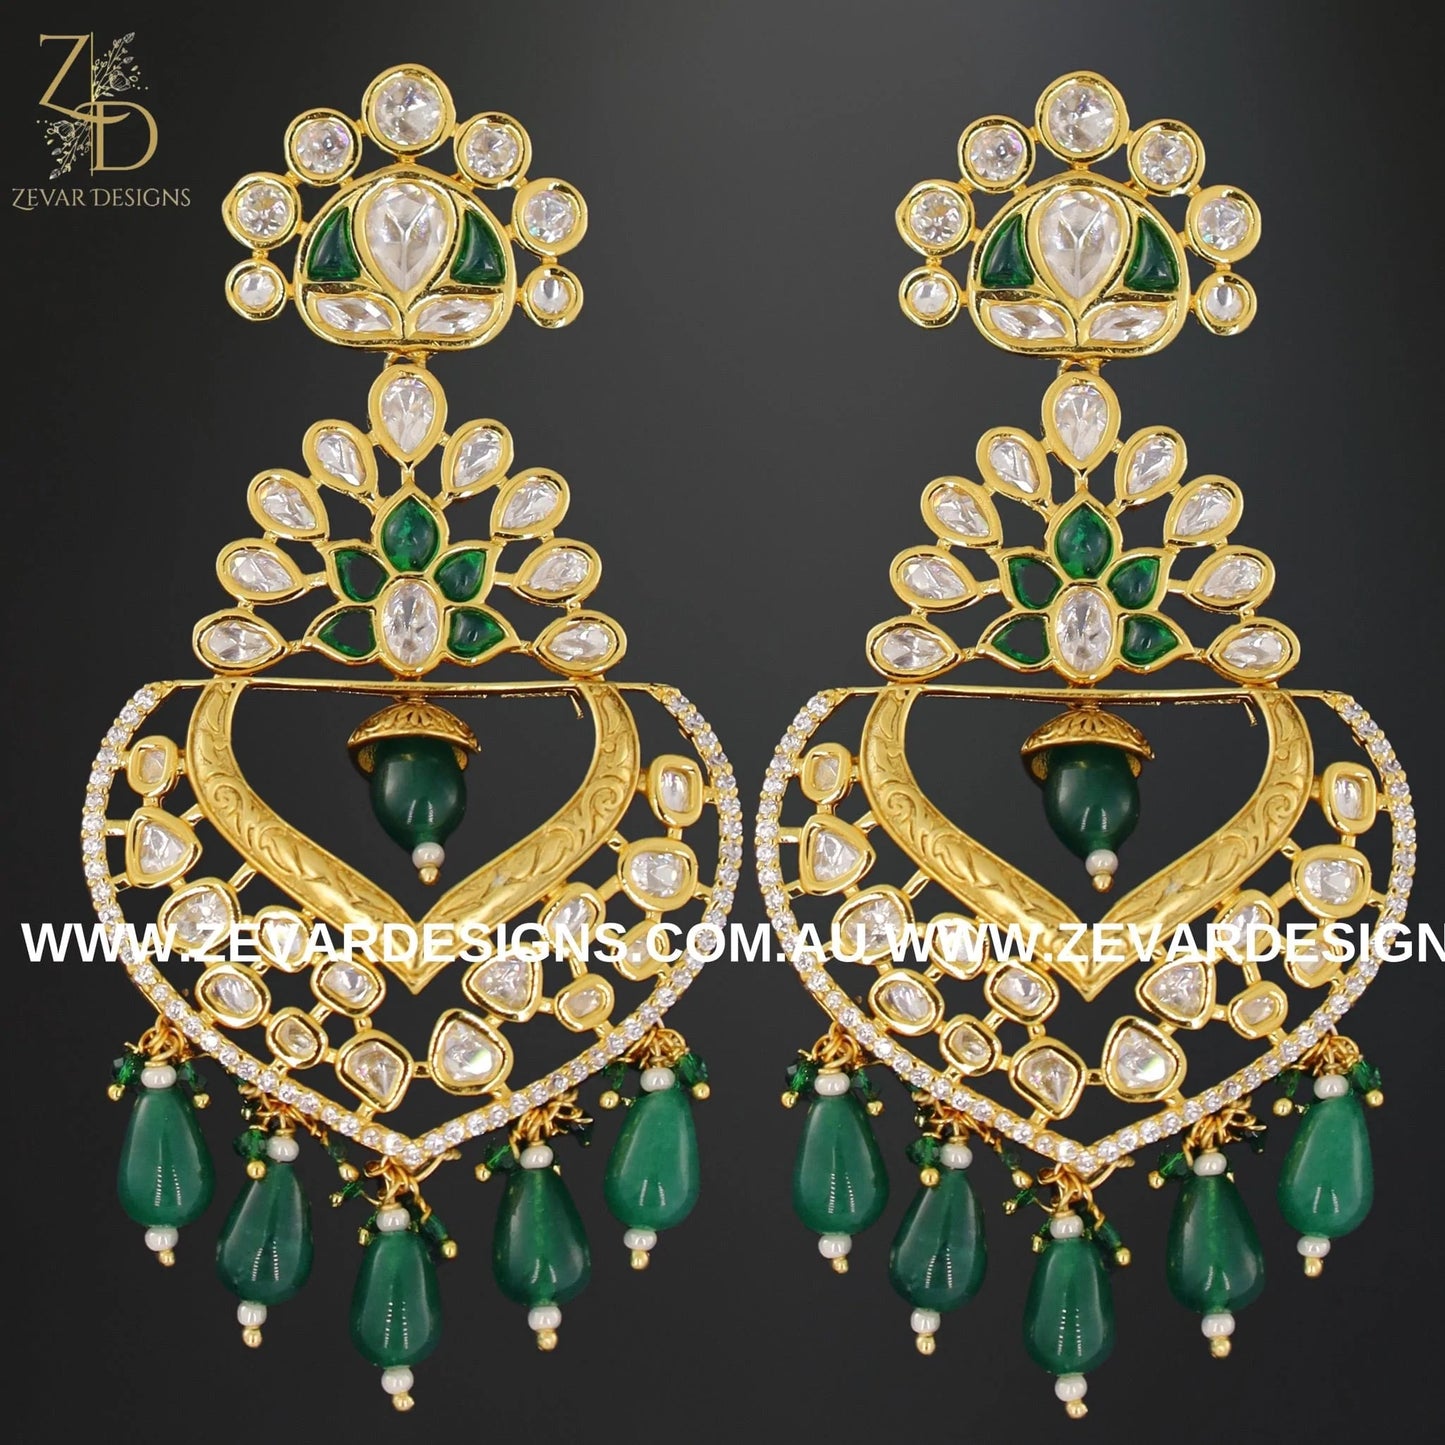 Zevar Designs Kundan Earrings Kundan Chandbali Earrings - Green